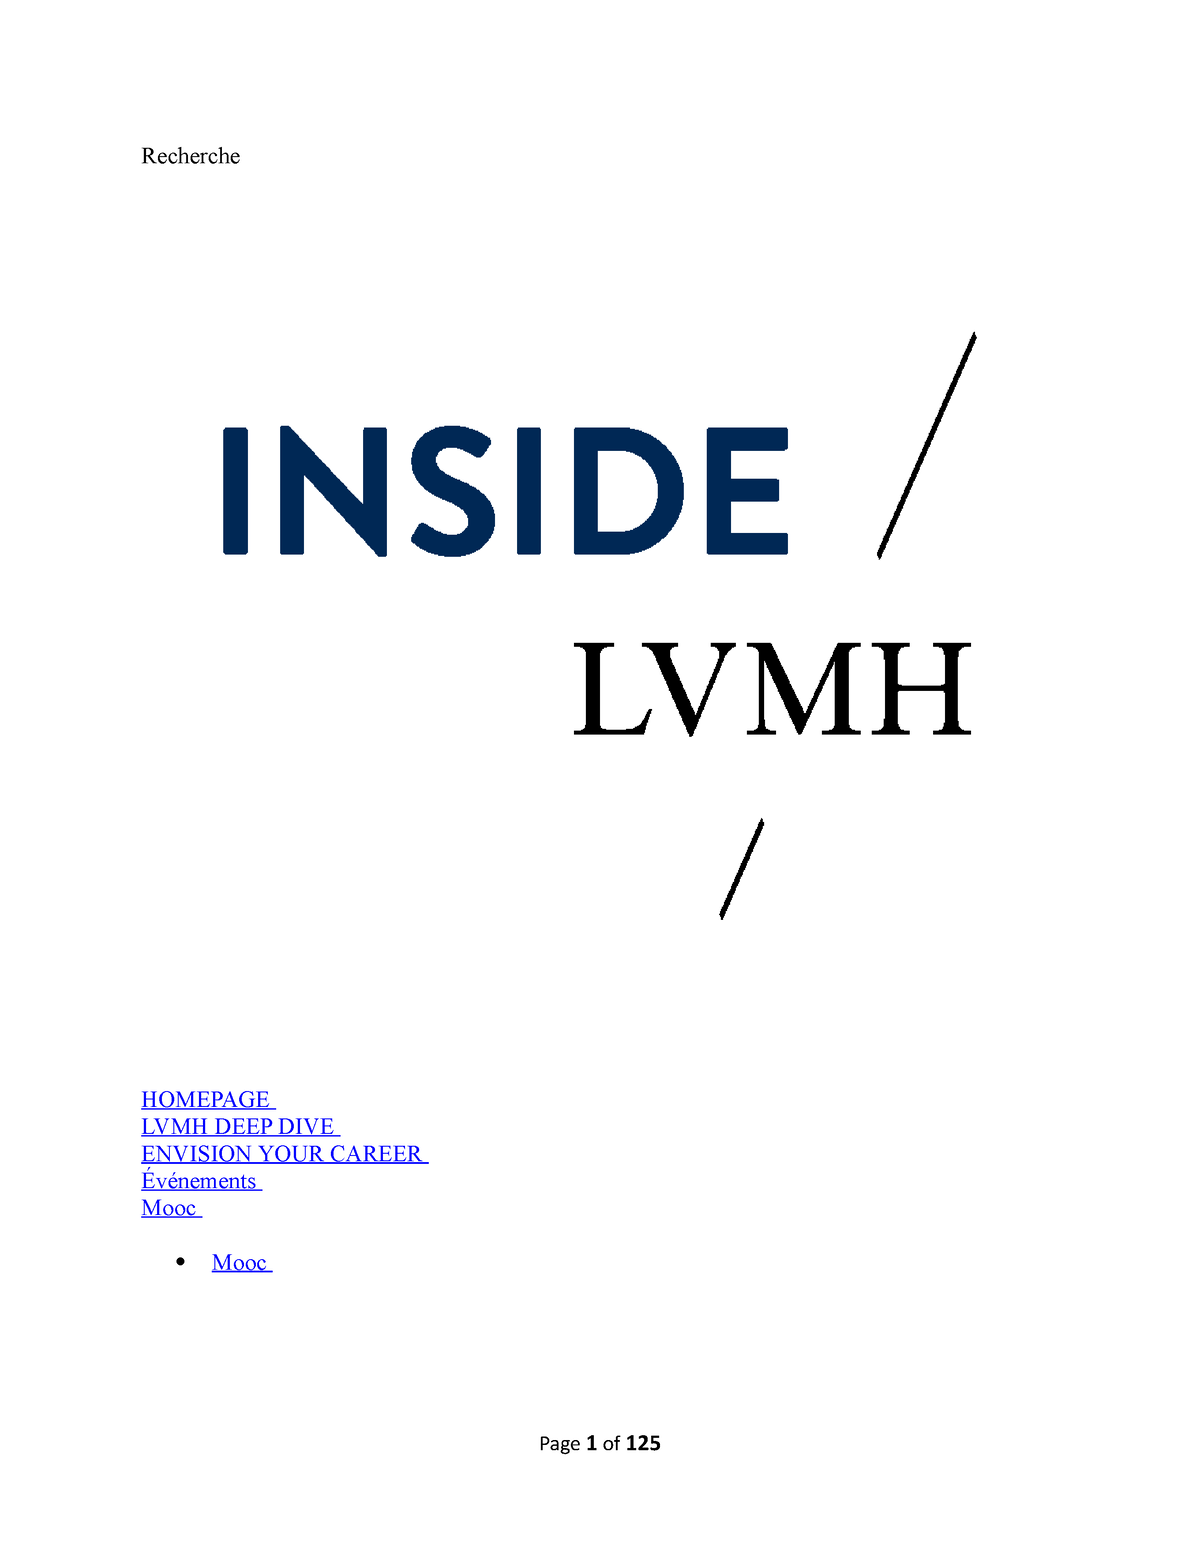 Inside lvmh - module 1 lvmh certificate - module 1 The Values of